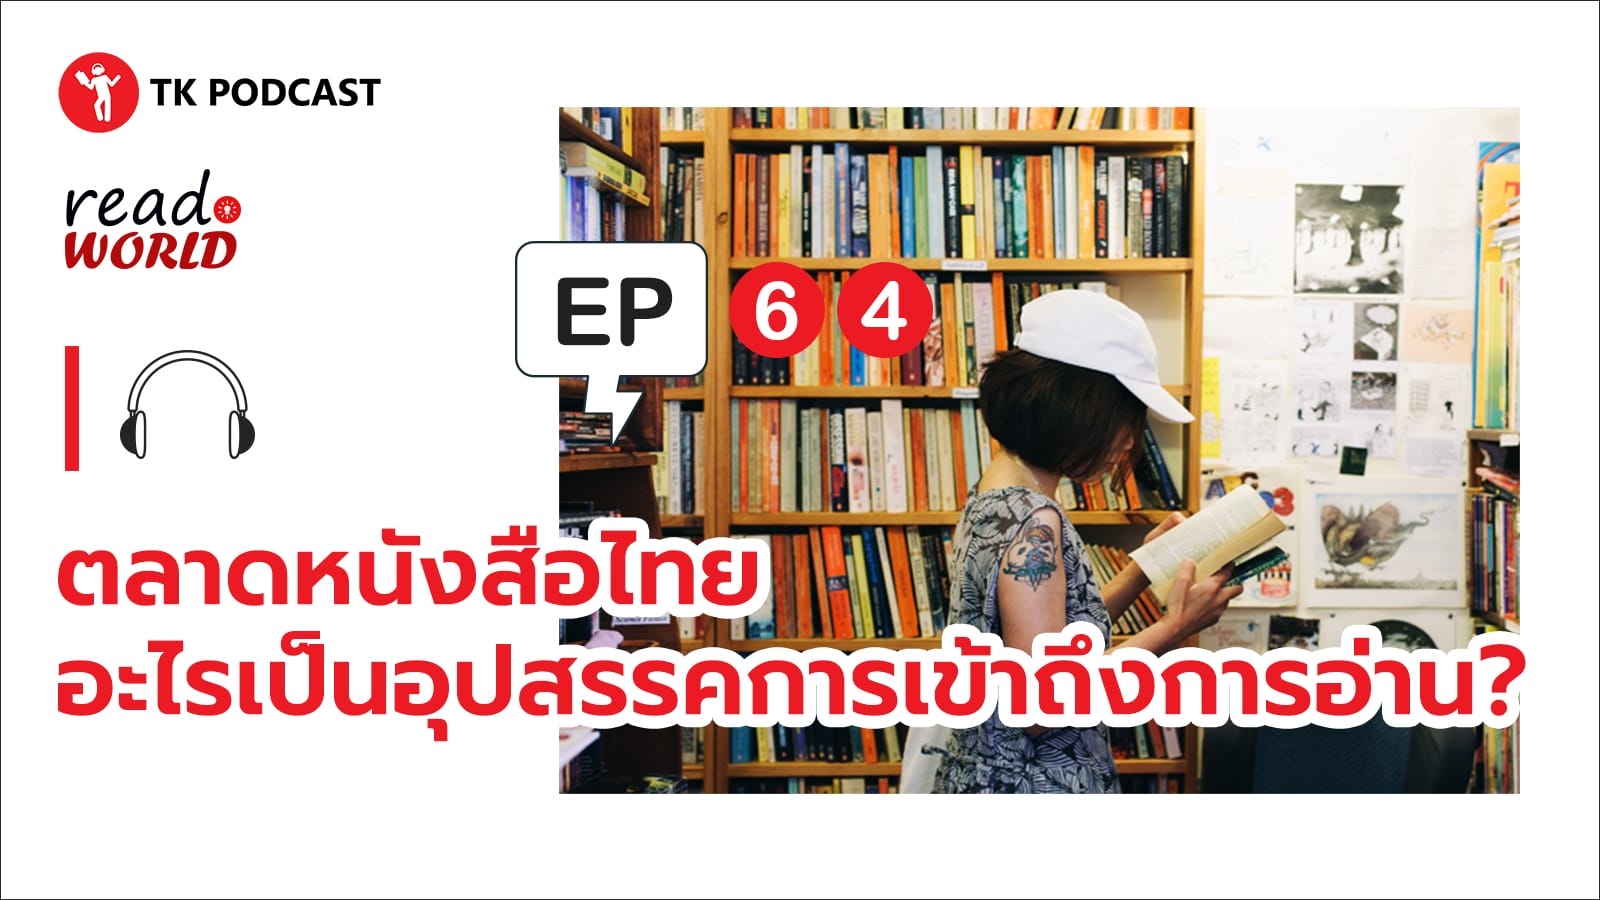 ตลาดหนังสือไทย อะไรเป็นอุปสรรคการเข้าถึงการอ่าน